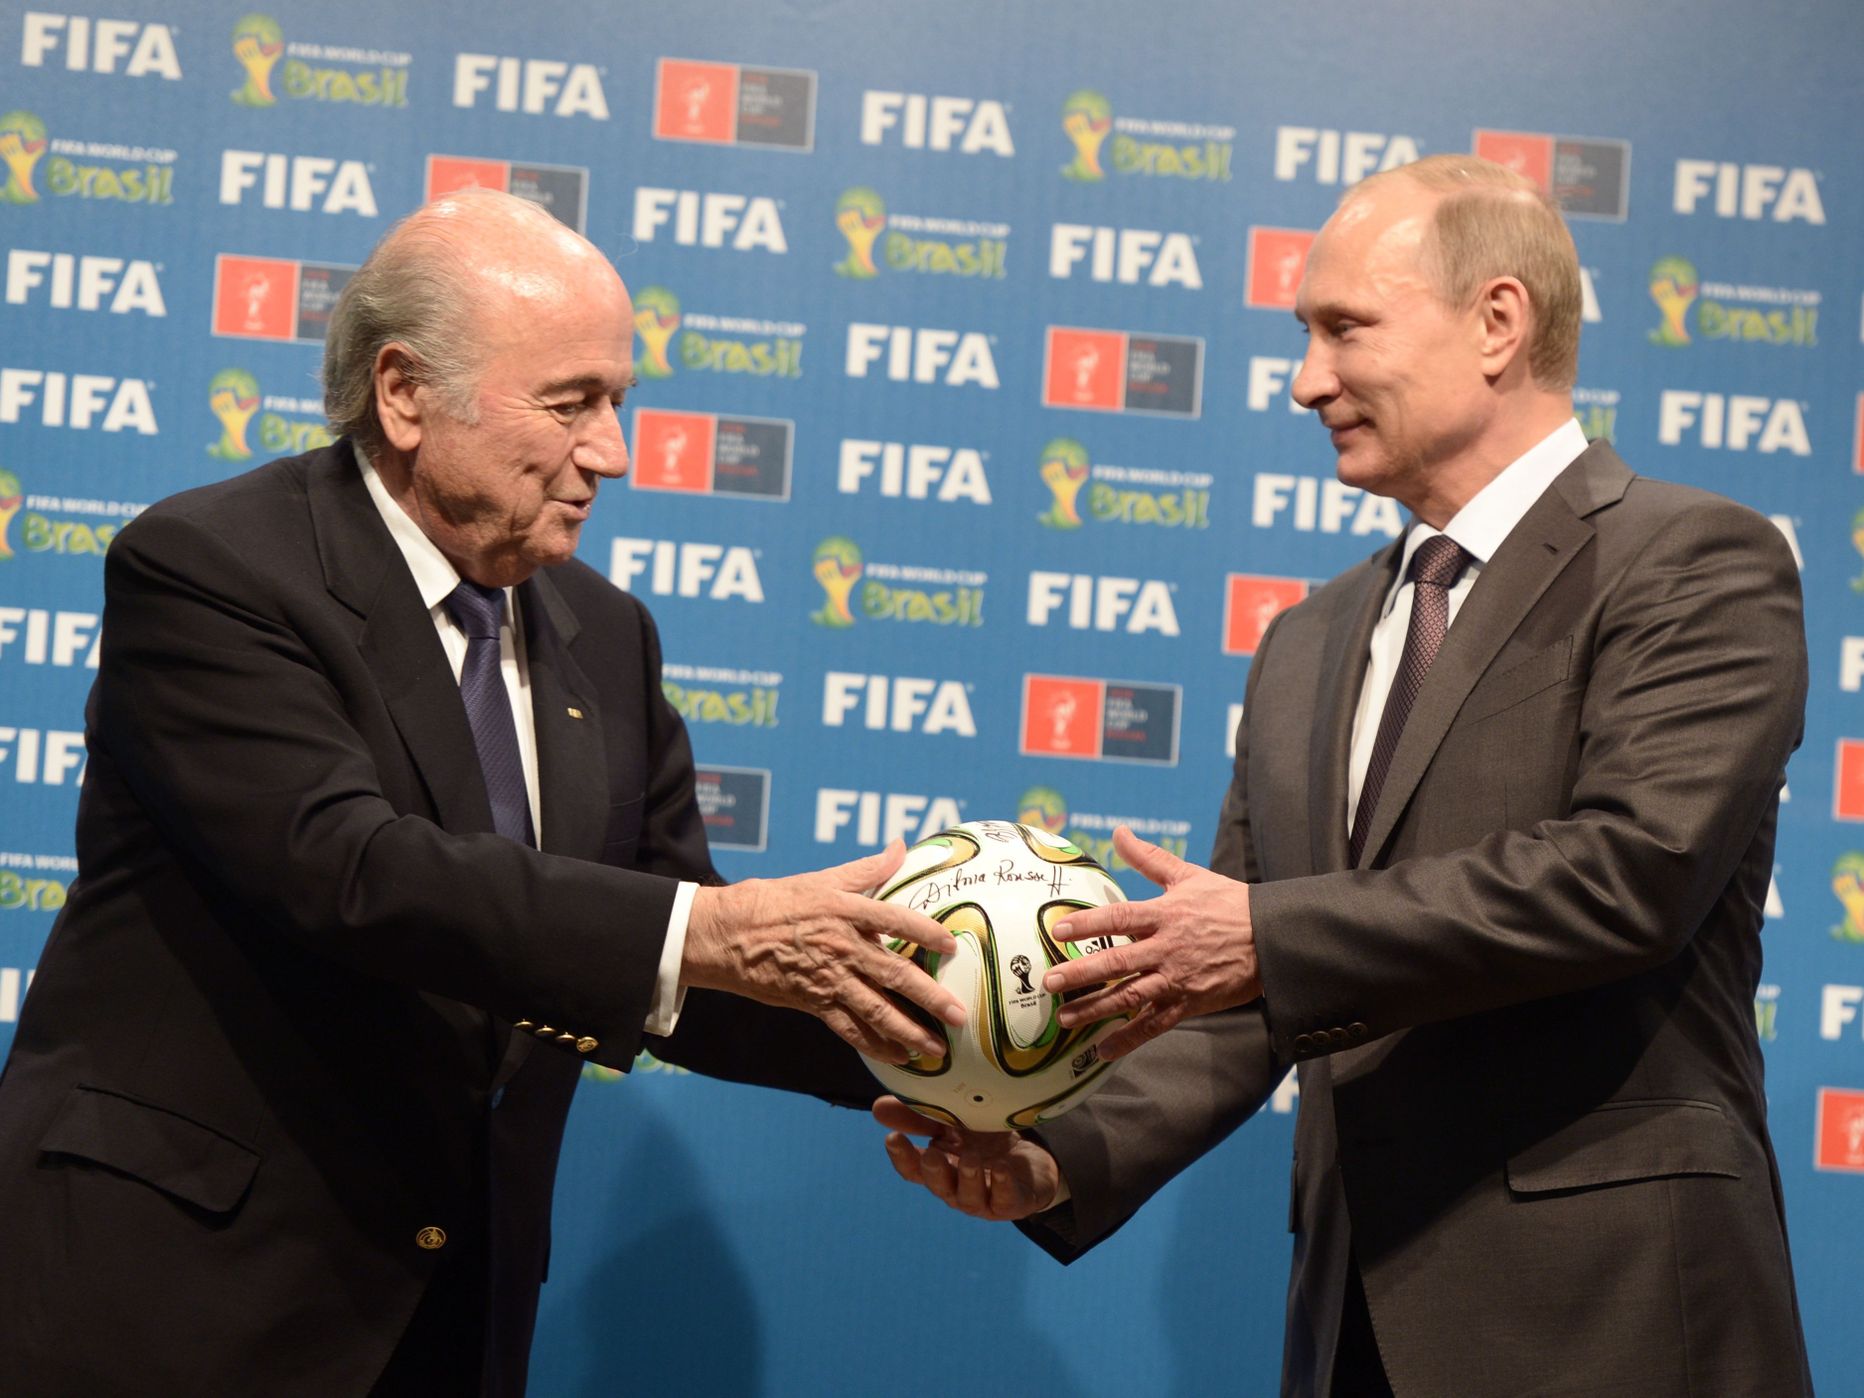 FIFA president Sepp Blatter, Vene president Vladimir Putin